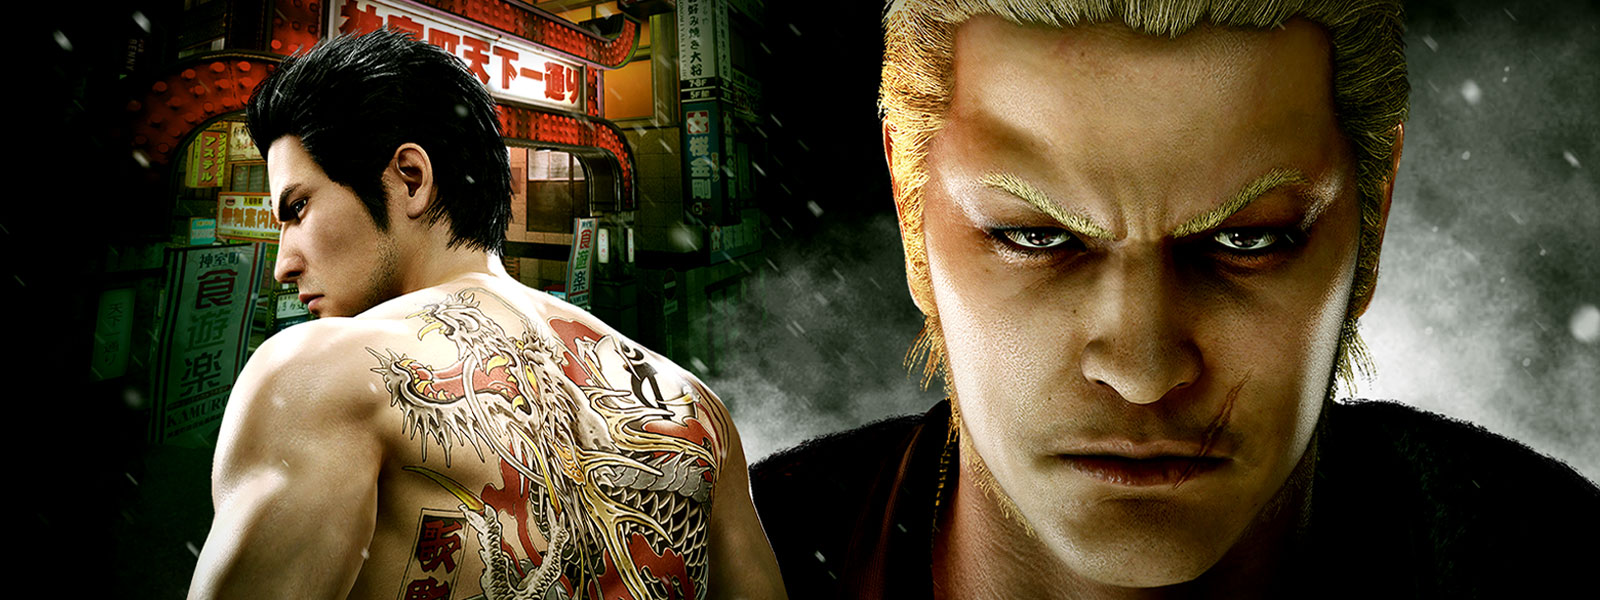 Zwei Yakuza-Charaktere sind bei Nacht in einer düsteren Stadt zu sehen.